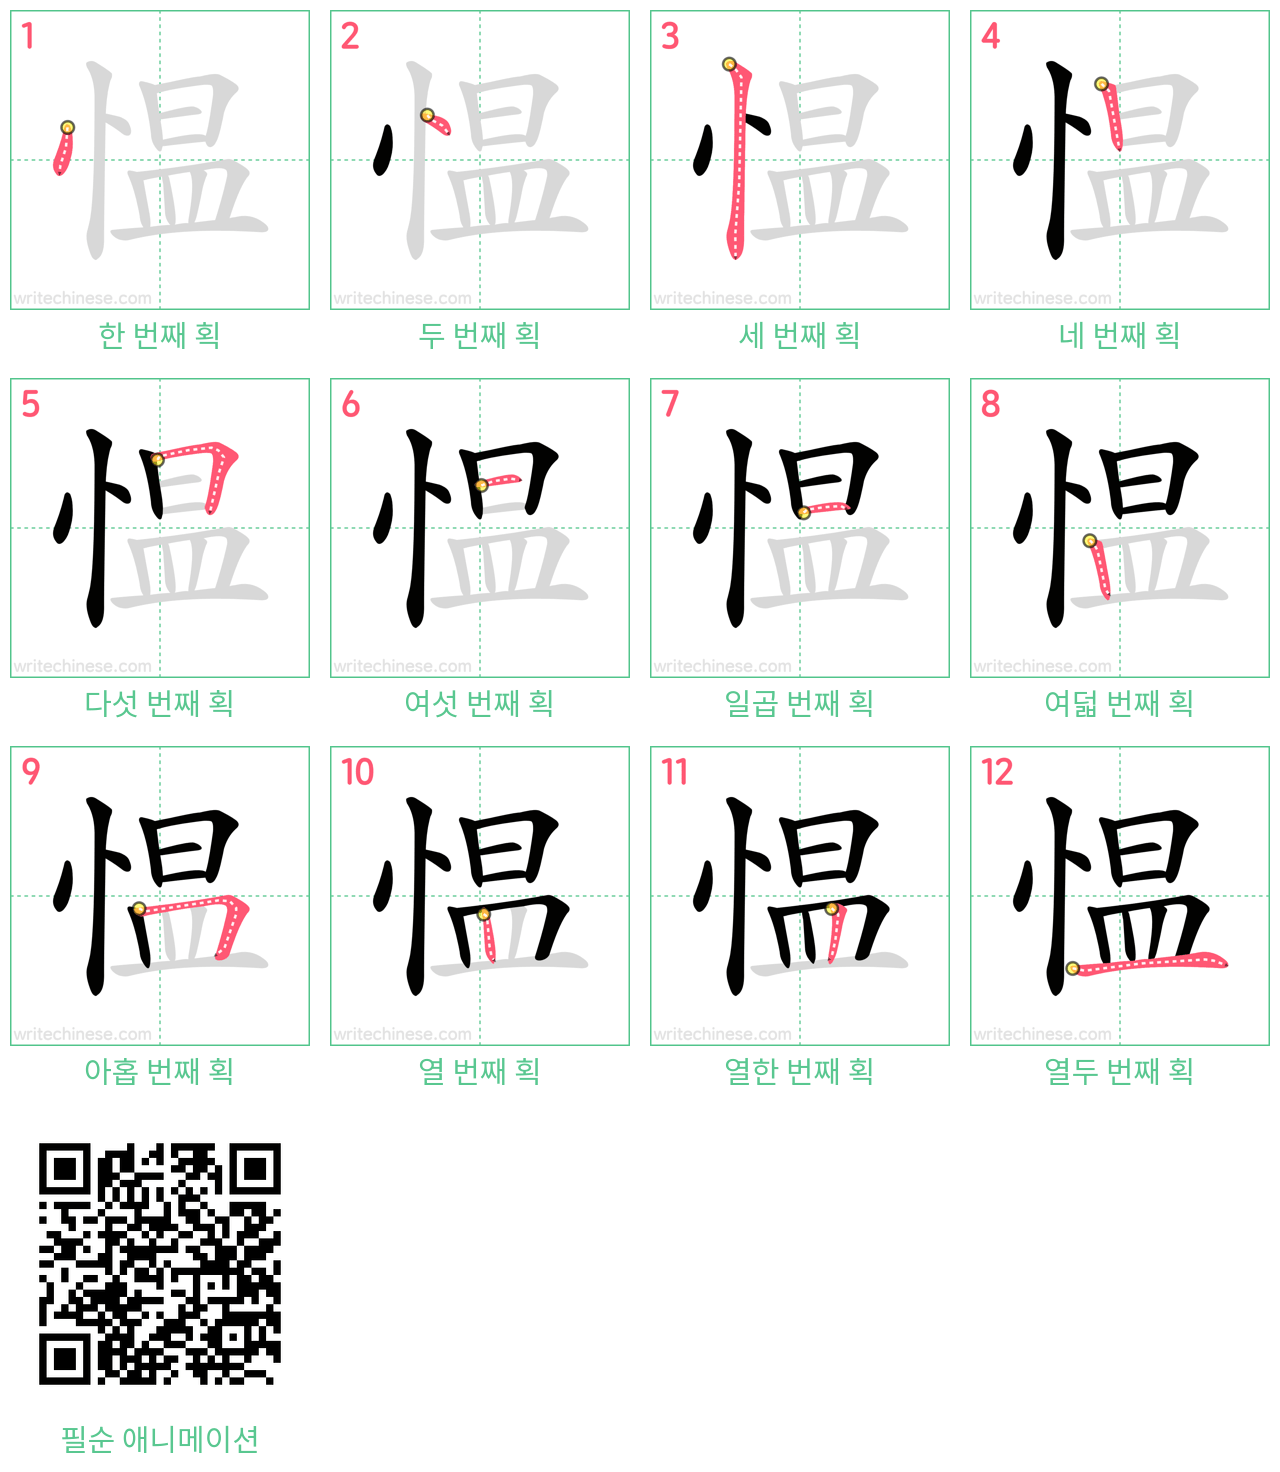 愠 step-by-step stroke order diagrams